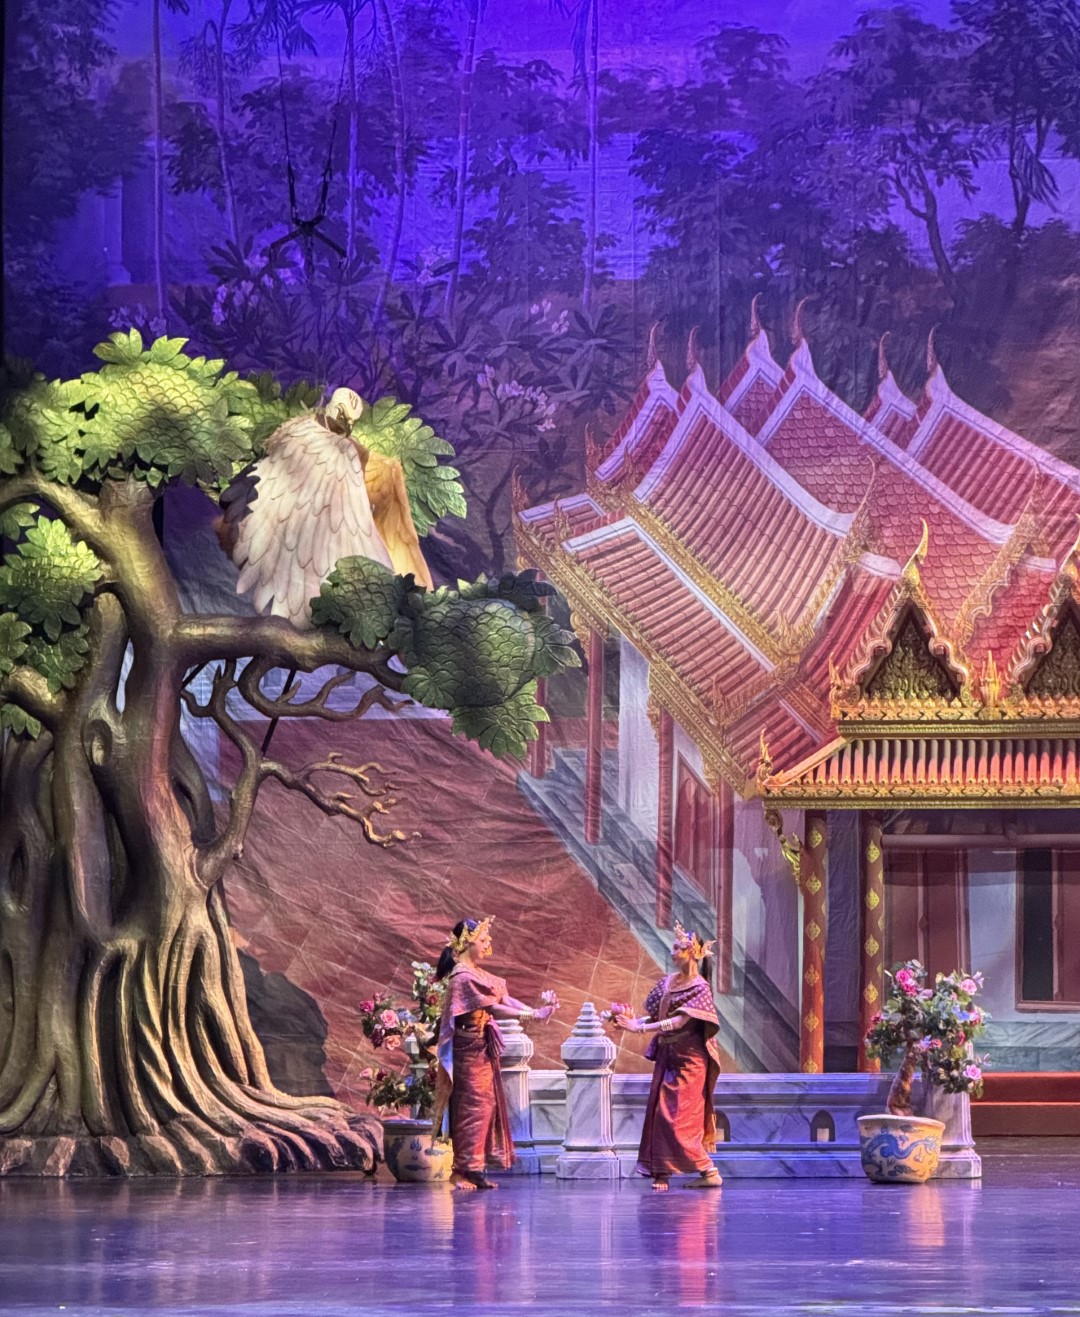 ทอดพระเนตรการแสดงโขนรอบปฐมทัศน์ เรื่อง รามเกียรติ์ ตอน “กุมภกรรณทดน้ำ” ณ หอประชุมใหญ่ ศูนย์วัฒนธรรมแห่งประเทศไทย